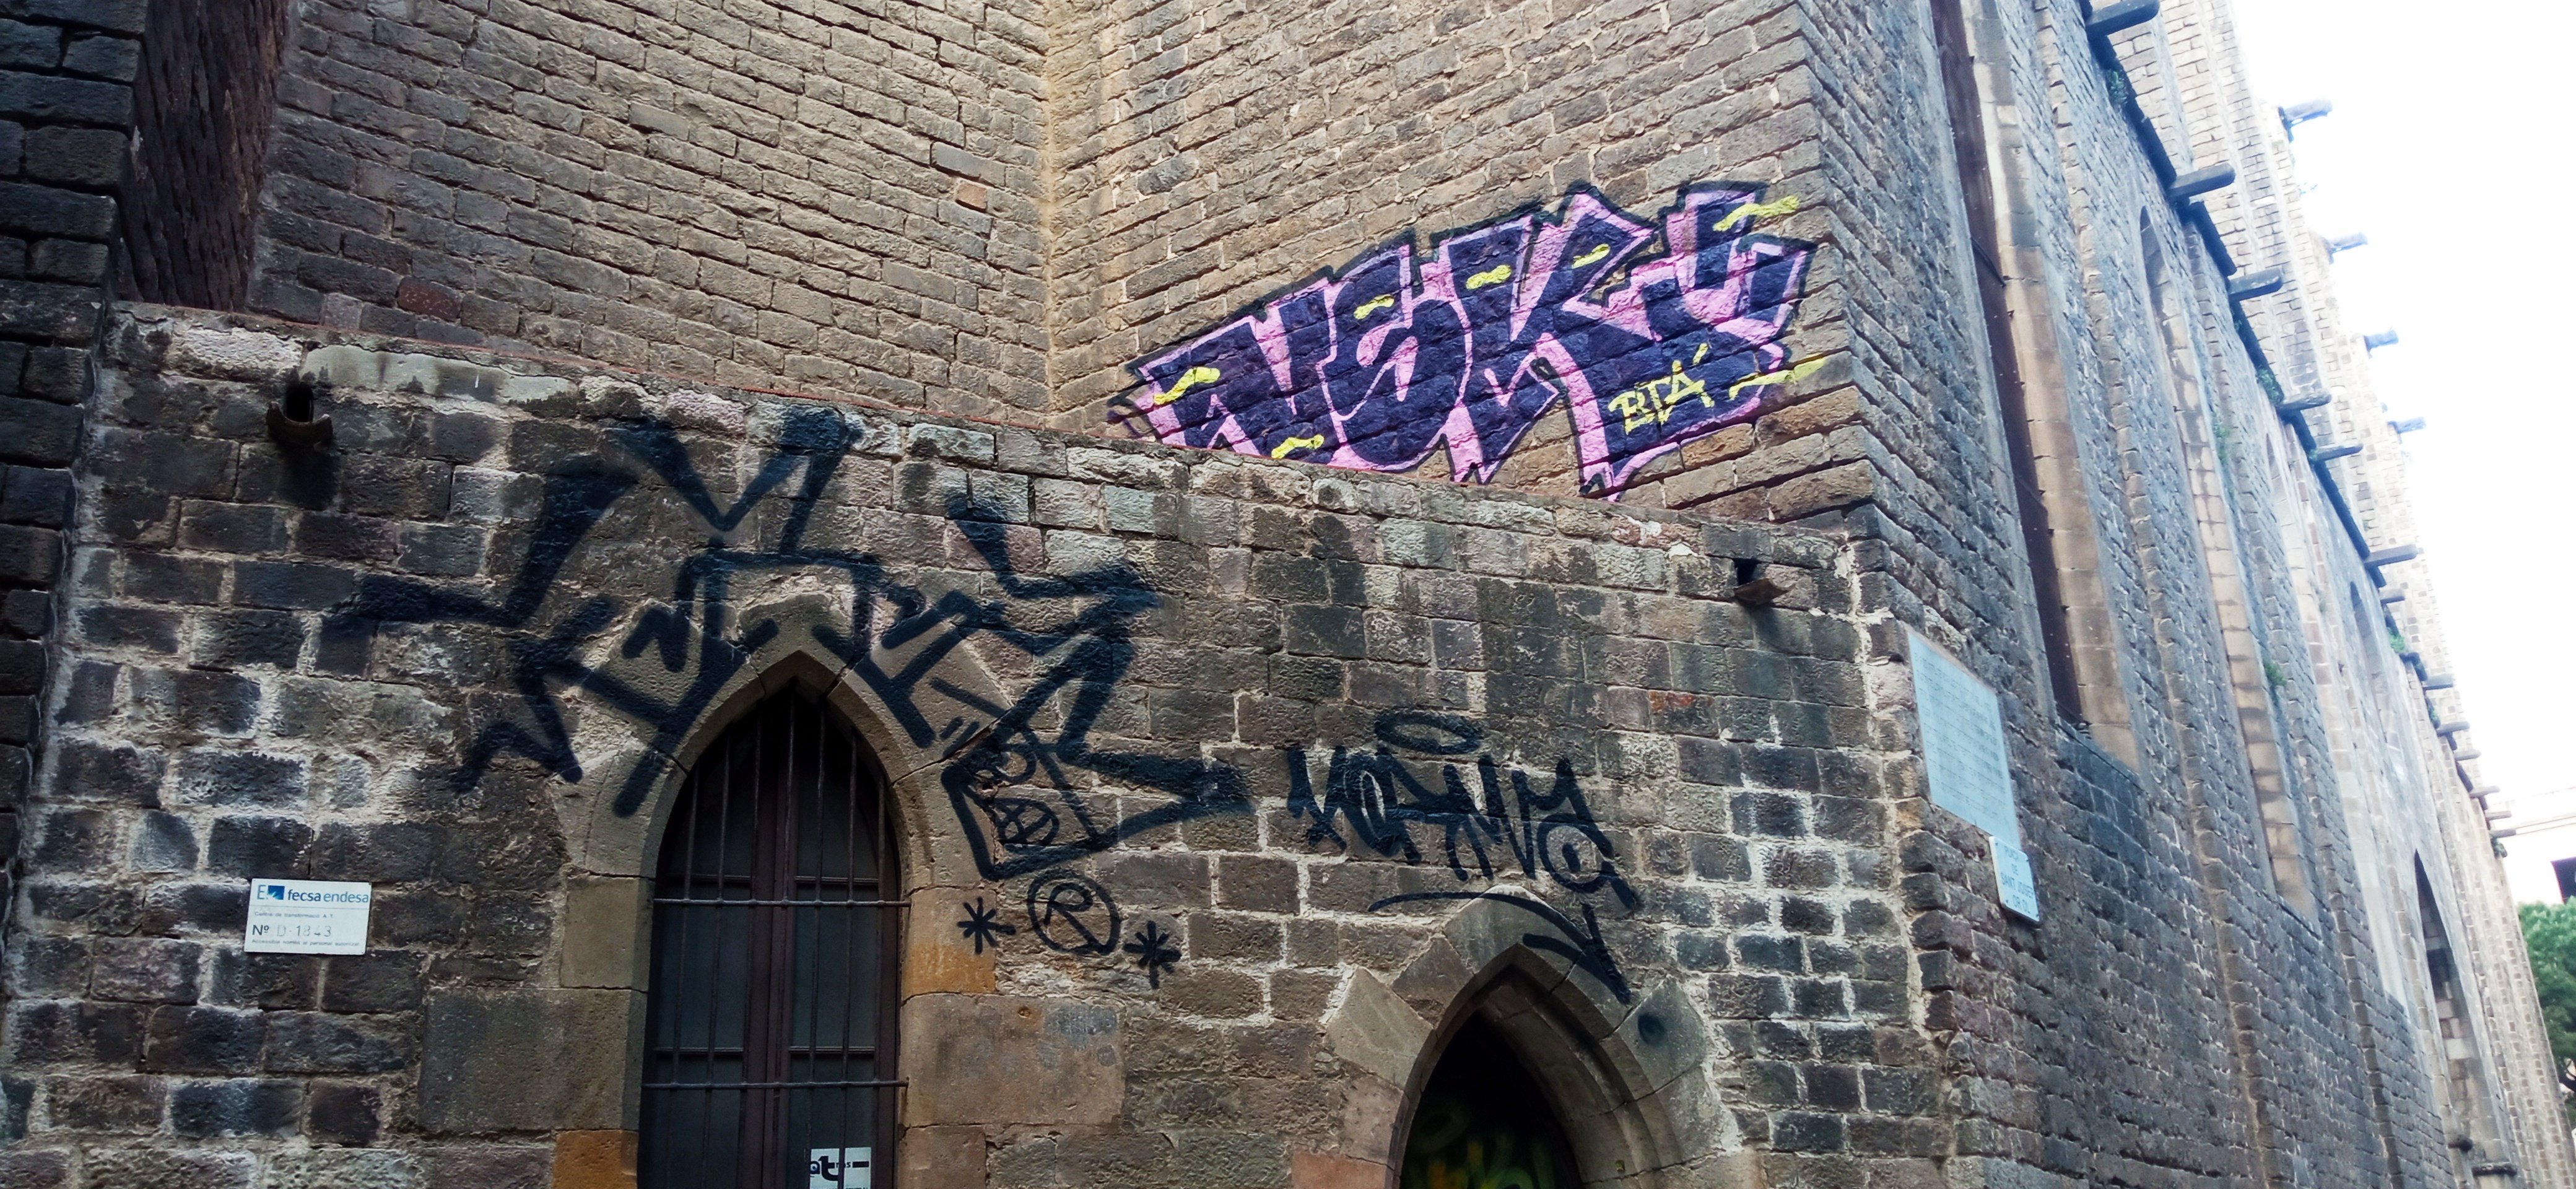 La mano dura del Ajuntament de Barcelona contra los grafiteros: no descarta acciones penales